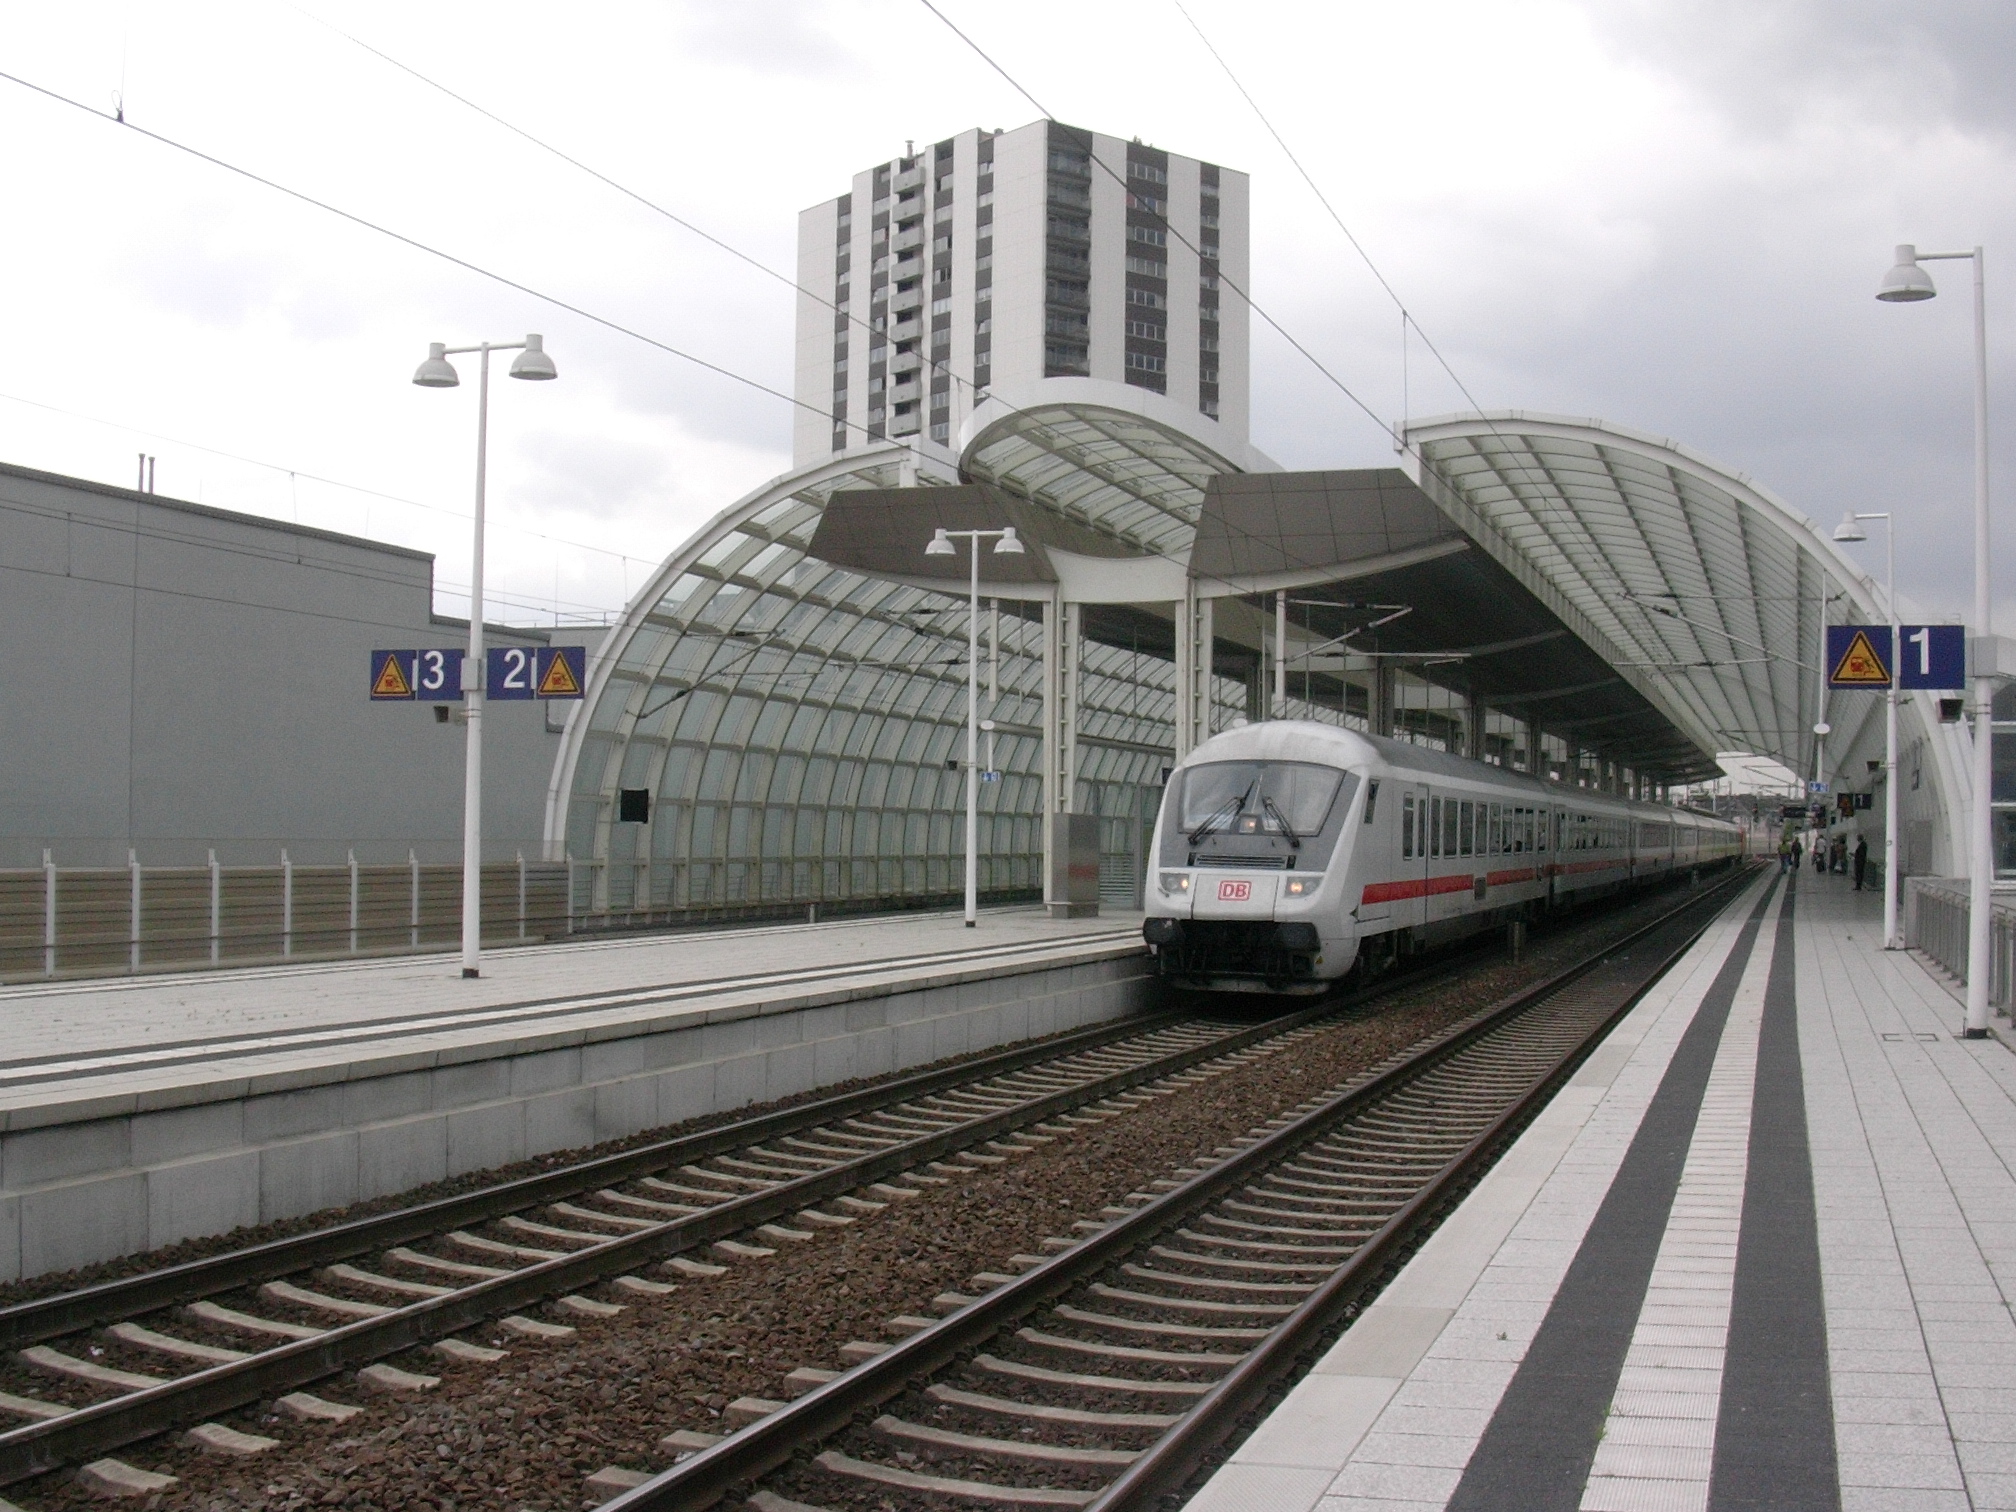 Bahnhof Ludwigshafen Mitte